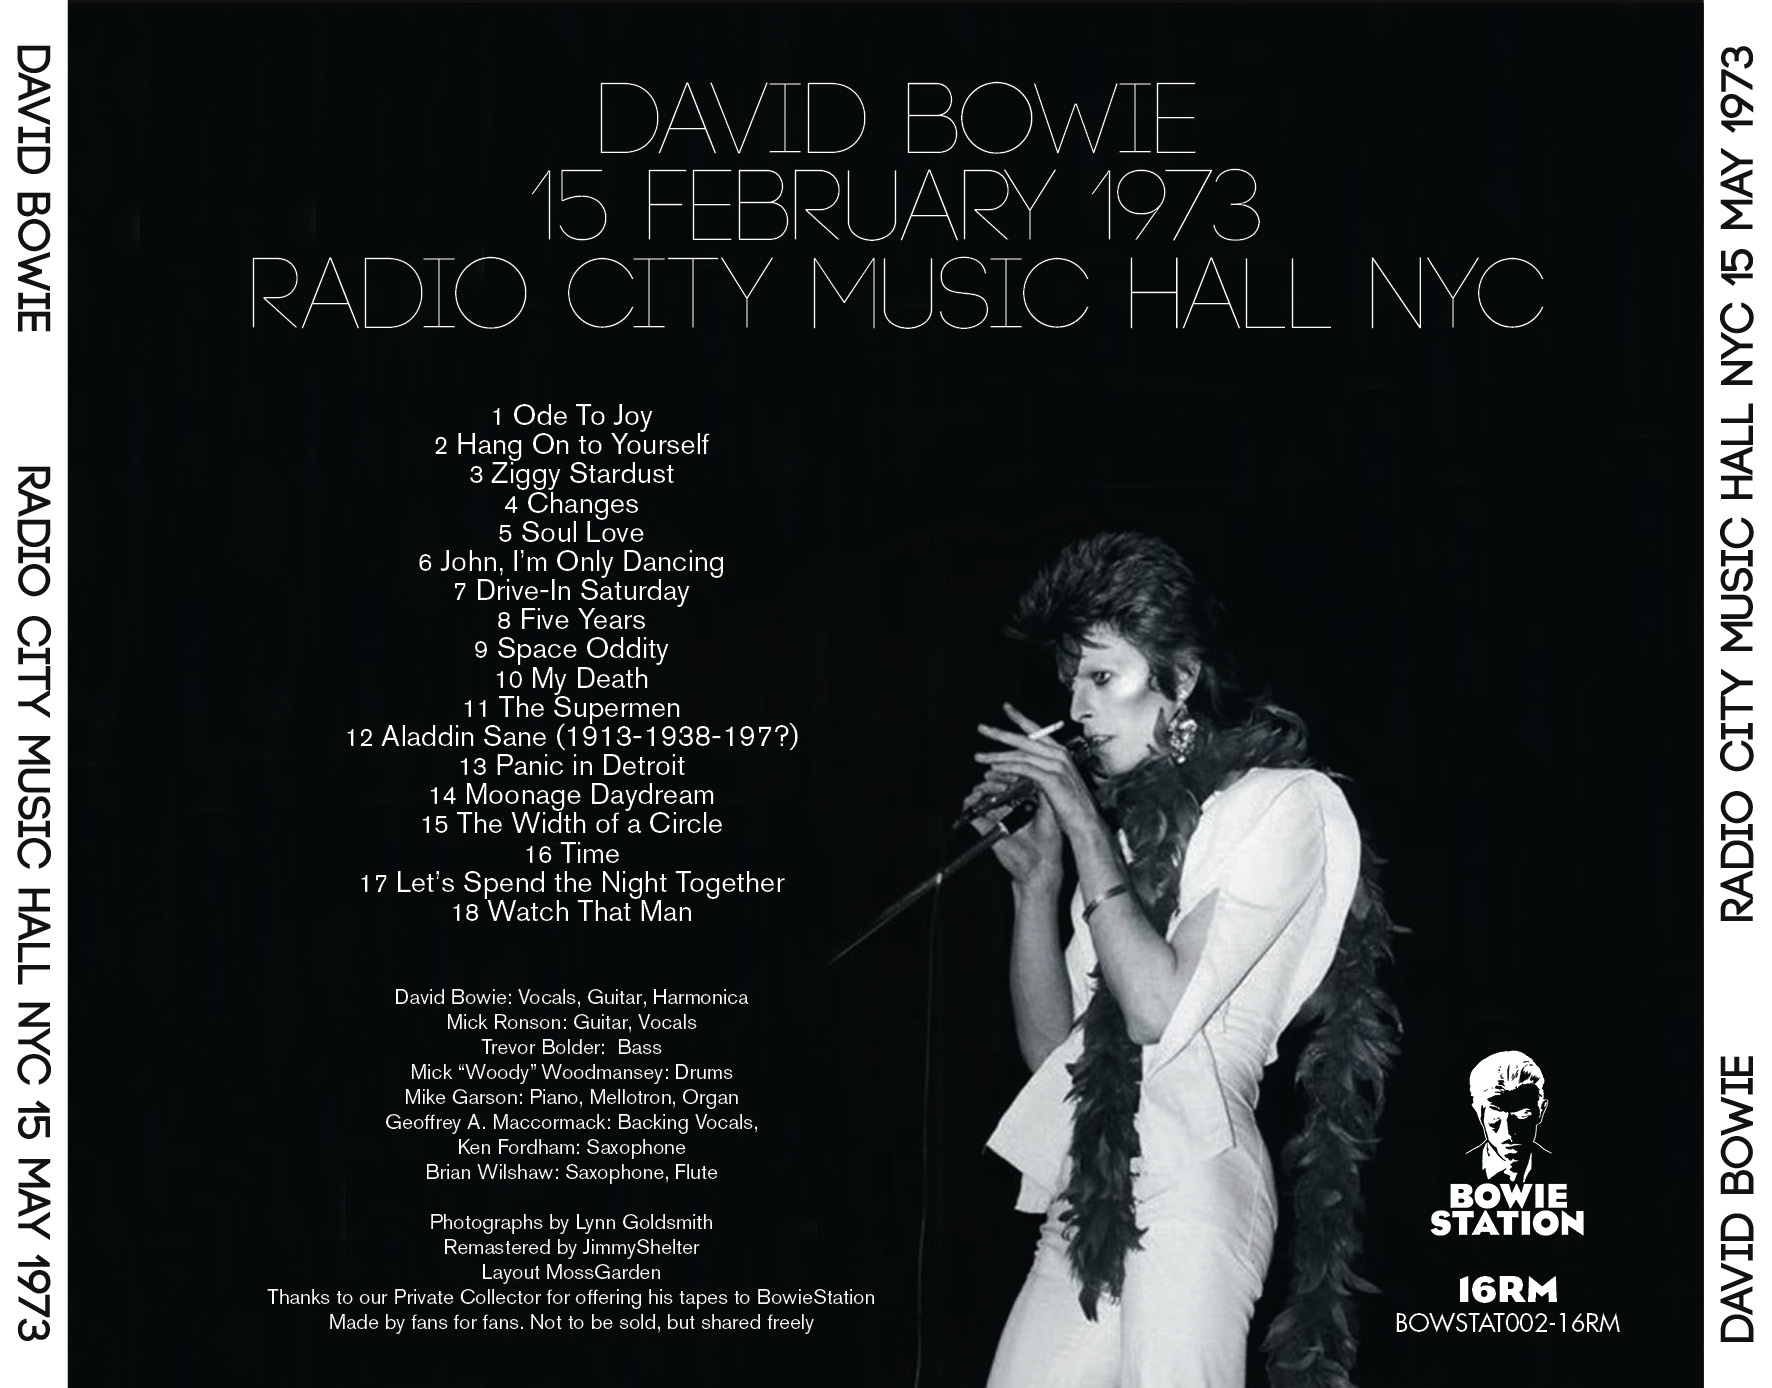 DavidBowie1973-02-15RadioCityMusicHallNYC (2).jpg